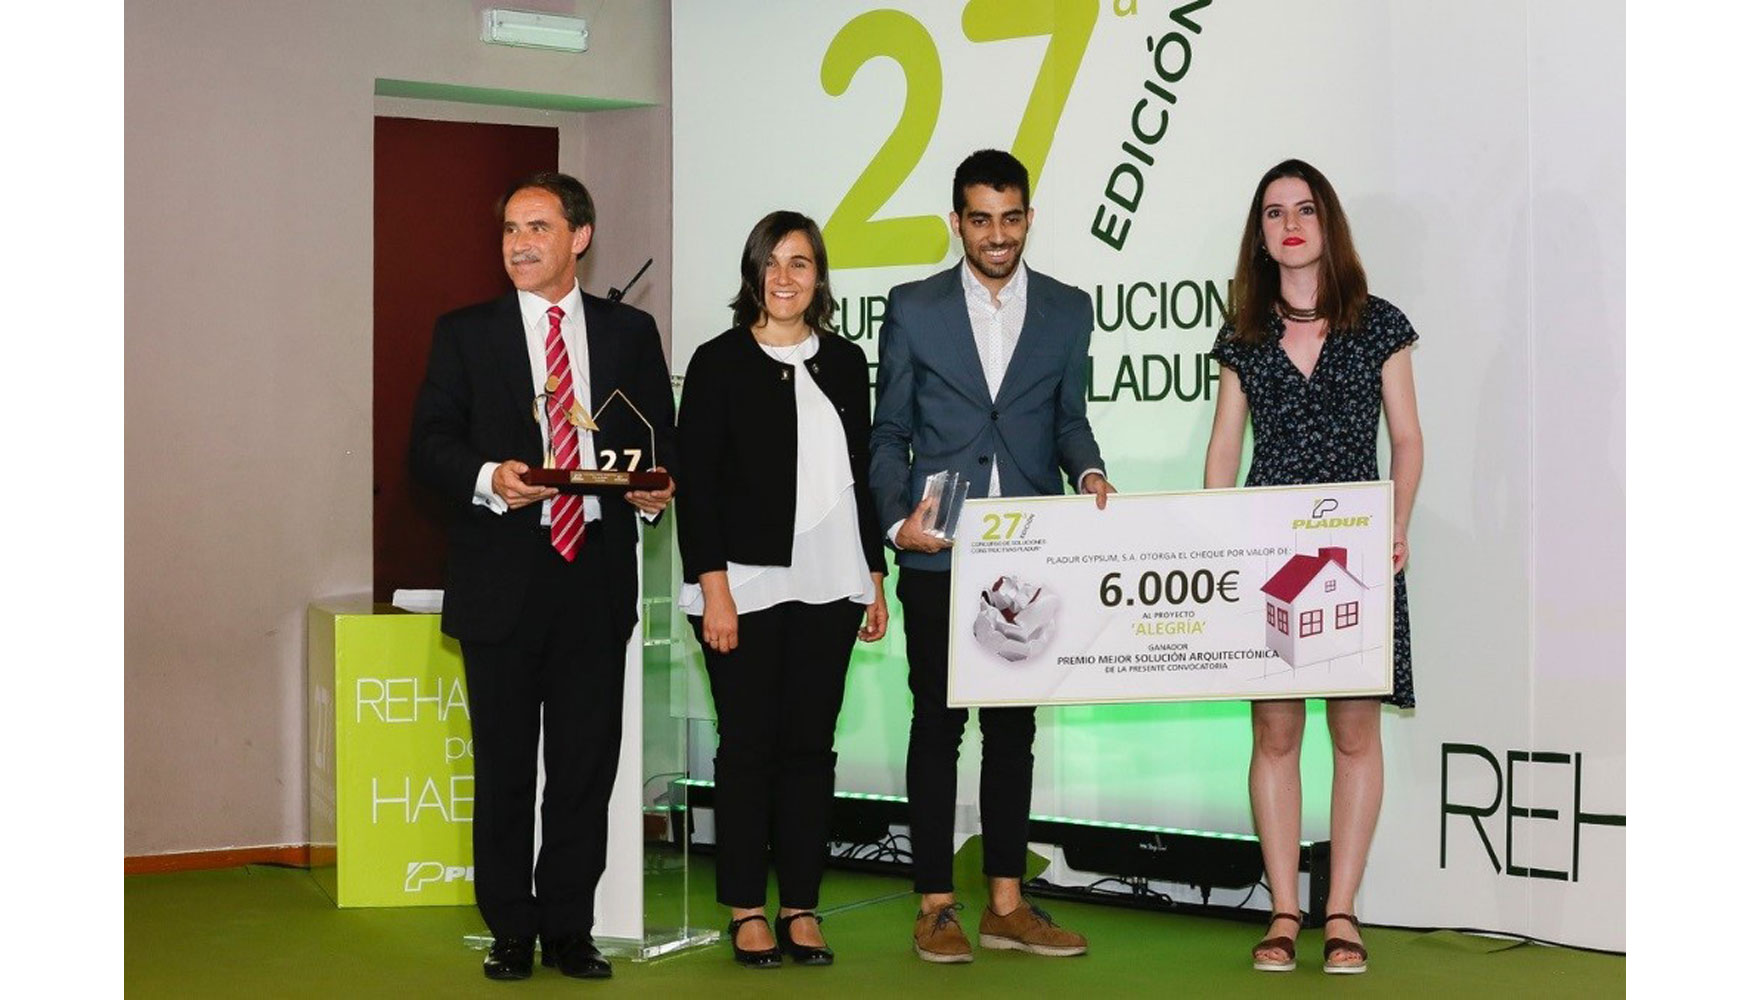 La Politcnica de Madrid se hizo con el primer premio de 6.000, un proyecto llamado Alegra liderado por dos estudiantes madrileos...